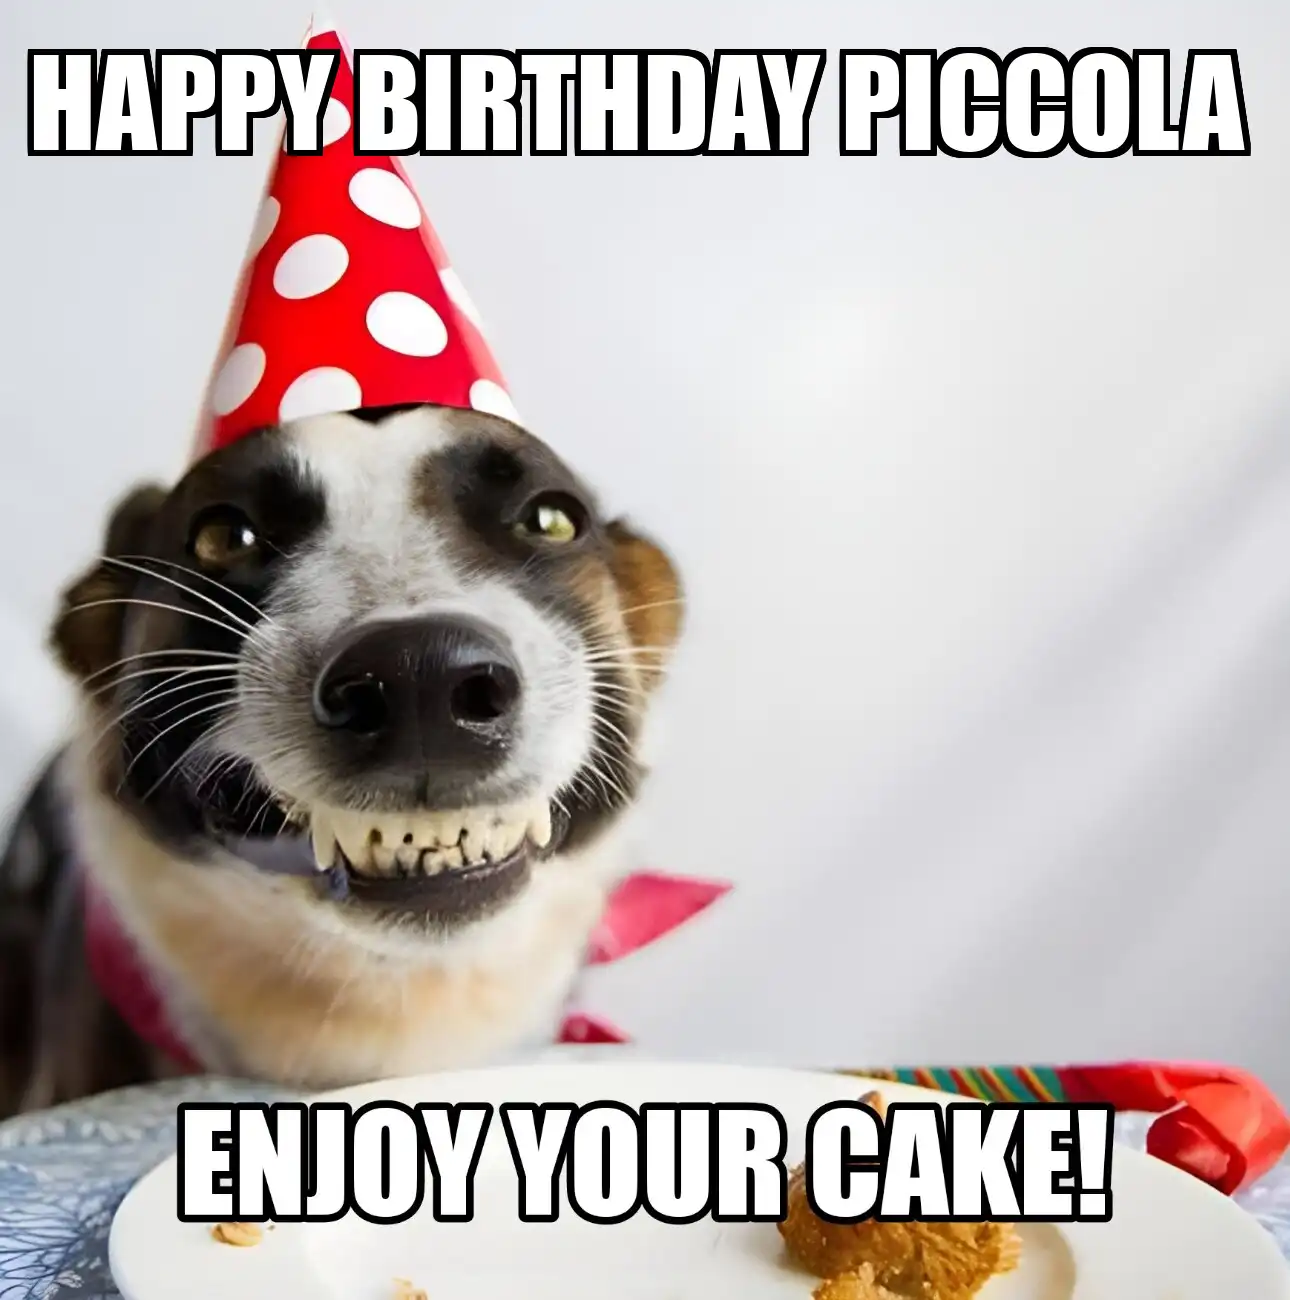 Happy Birthday Piccola Enjoy Your Cake Dog Meme